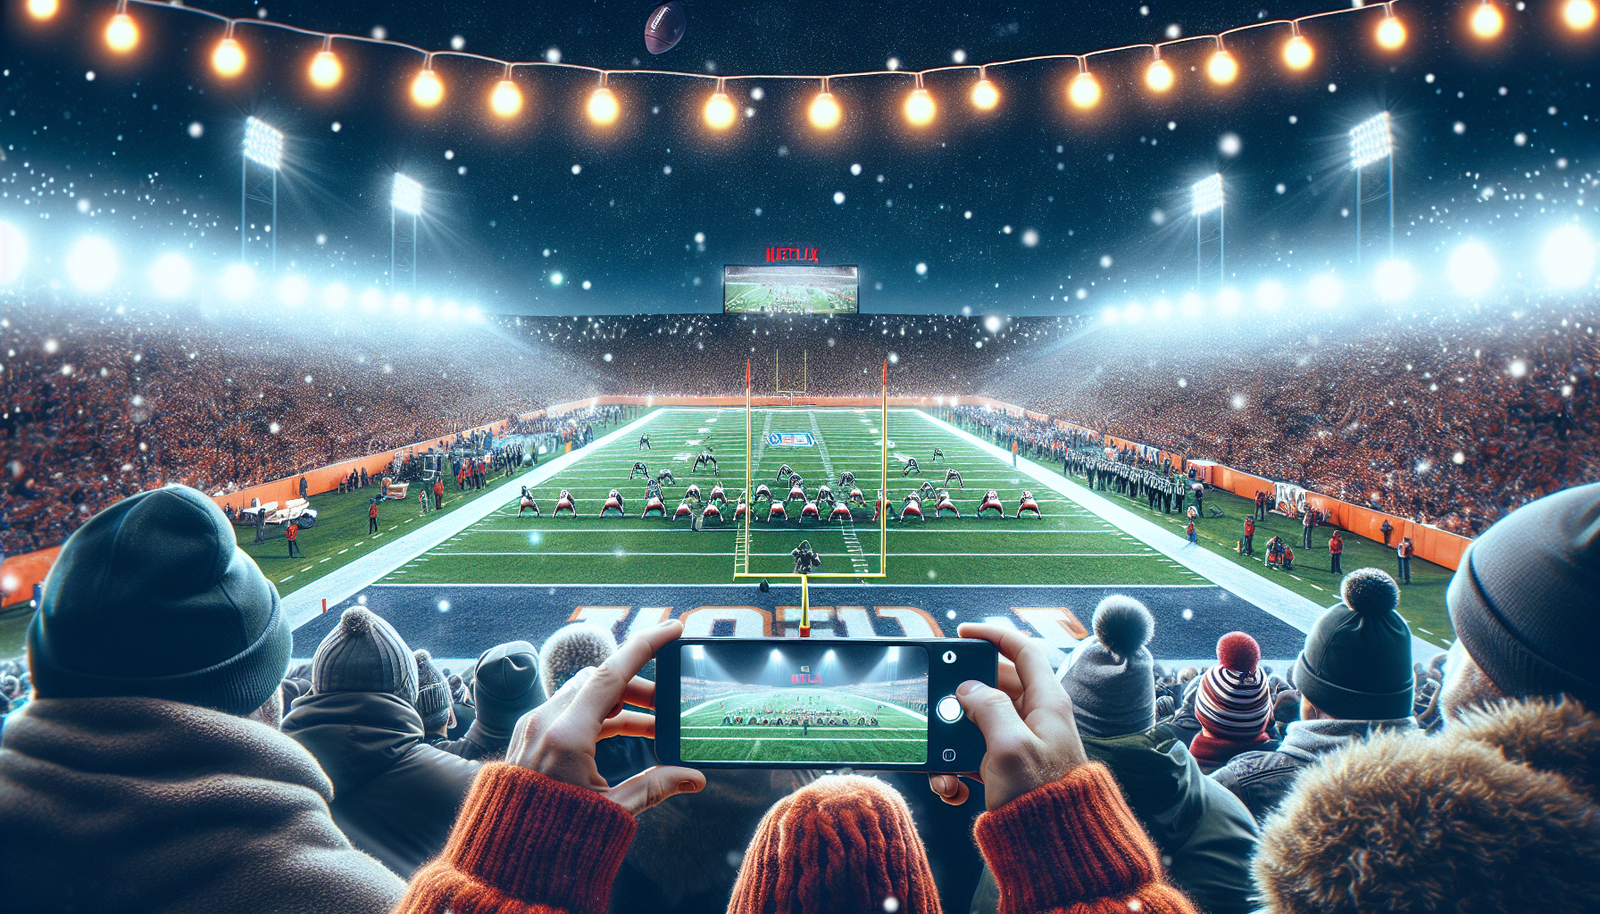 scopri se Netflix potrebbe diventare la destinazione inaspettata per le partite della NFL nel giorno di Natale in questo articolo stimolante.